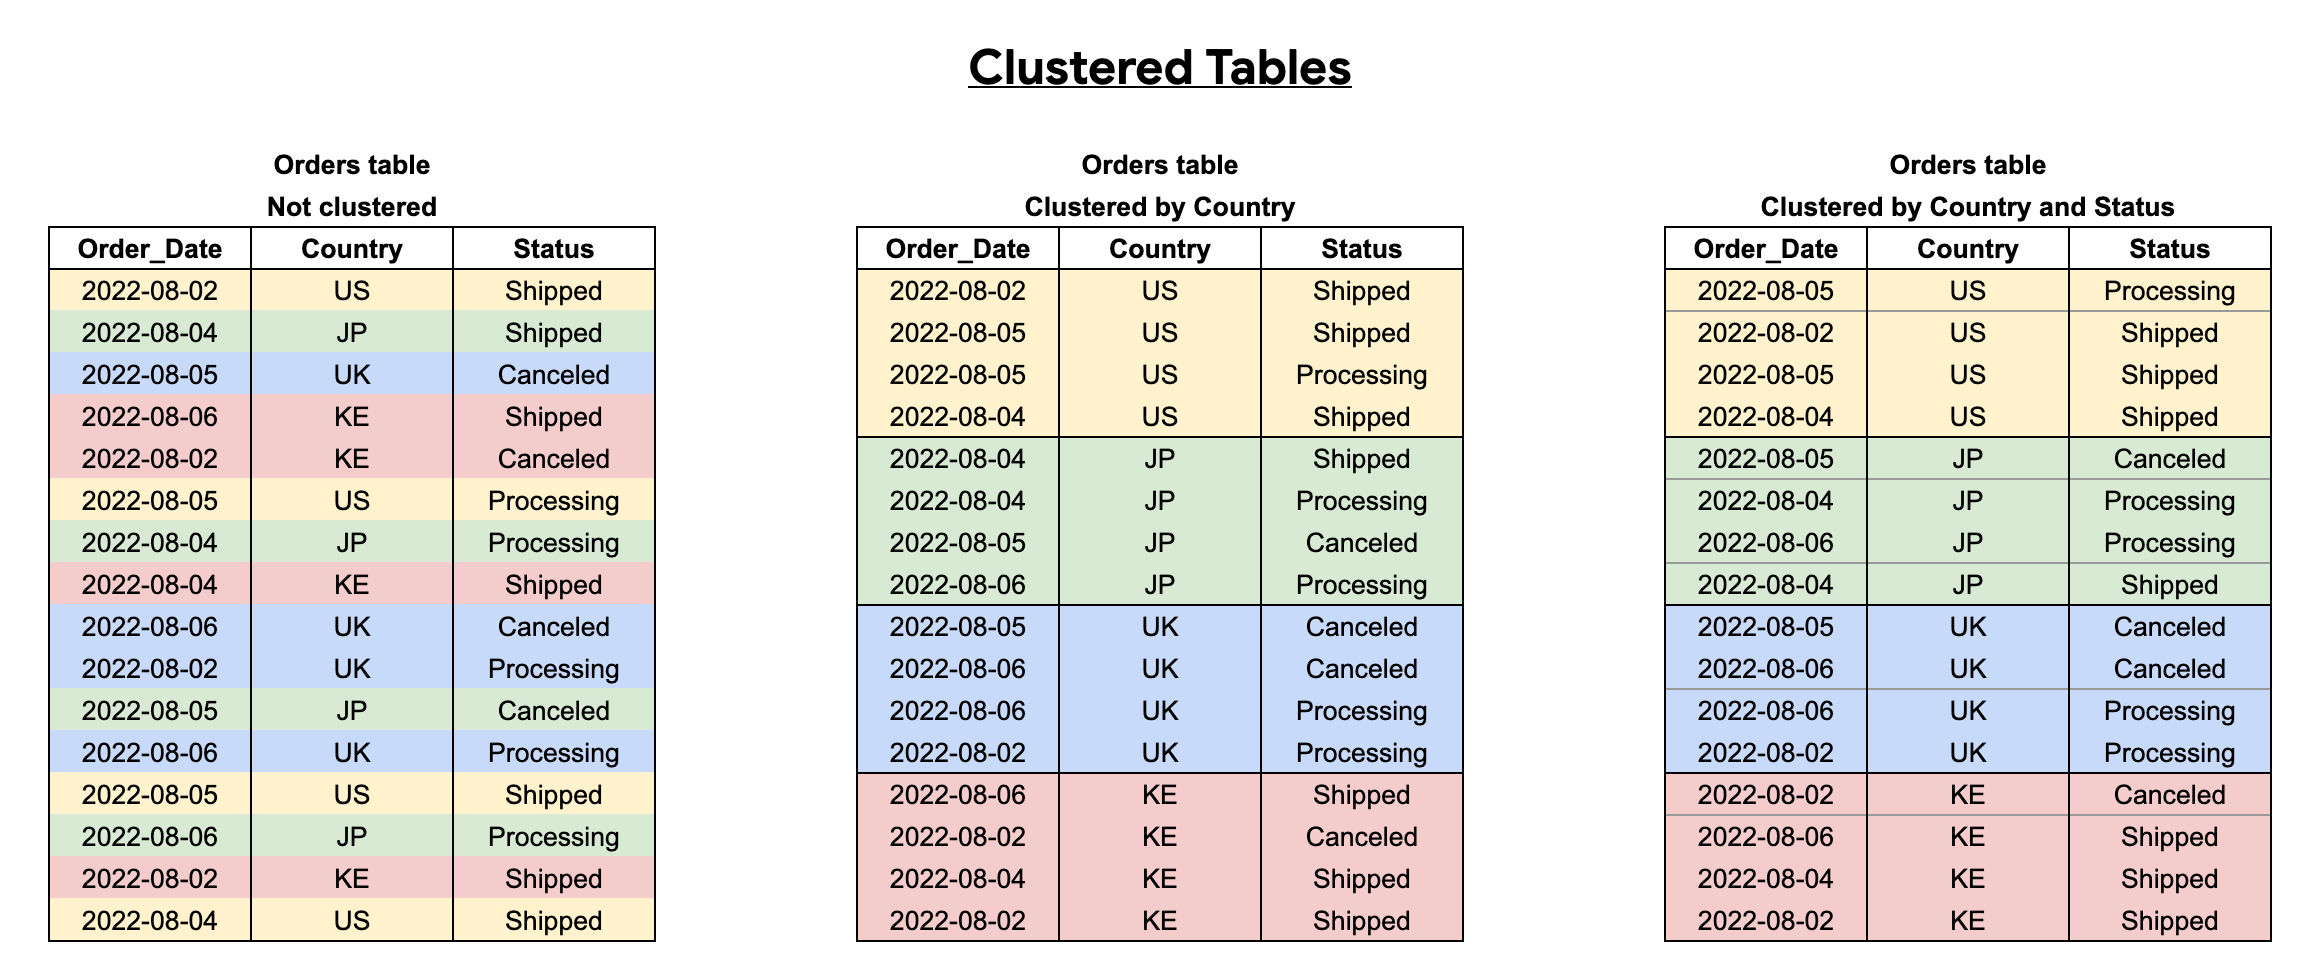 BigQuery は、クラスタ化テーブルのデータを並べ替えてクエリのパフォーマンスを向上させます。